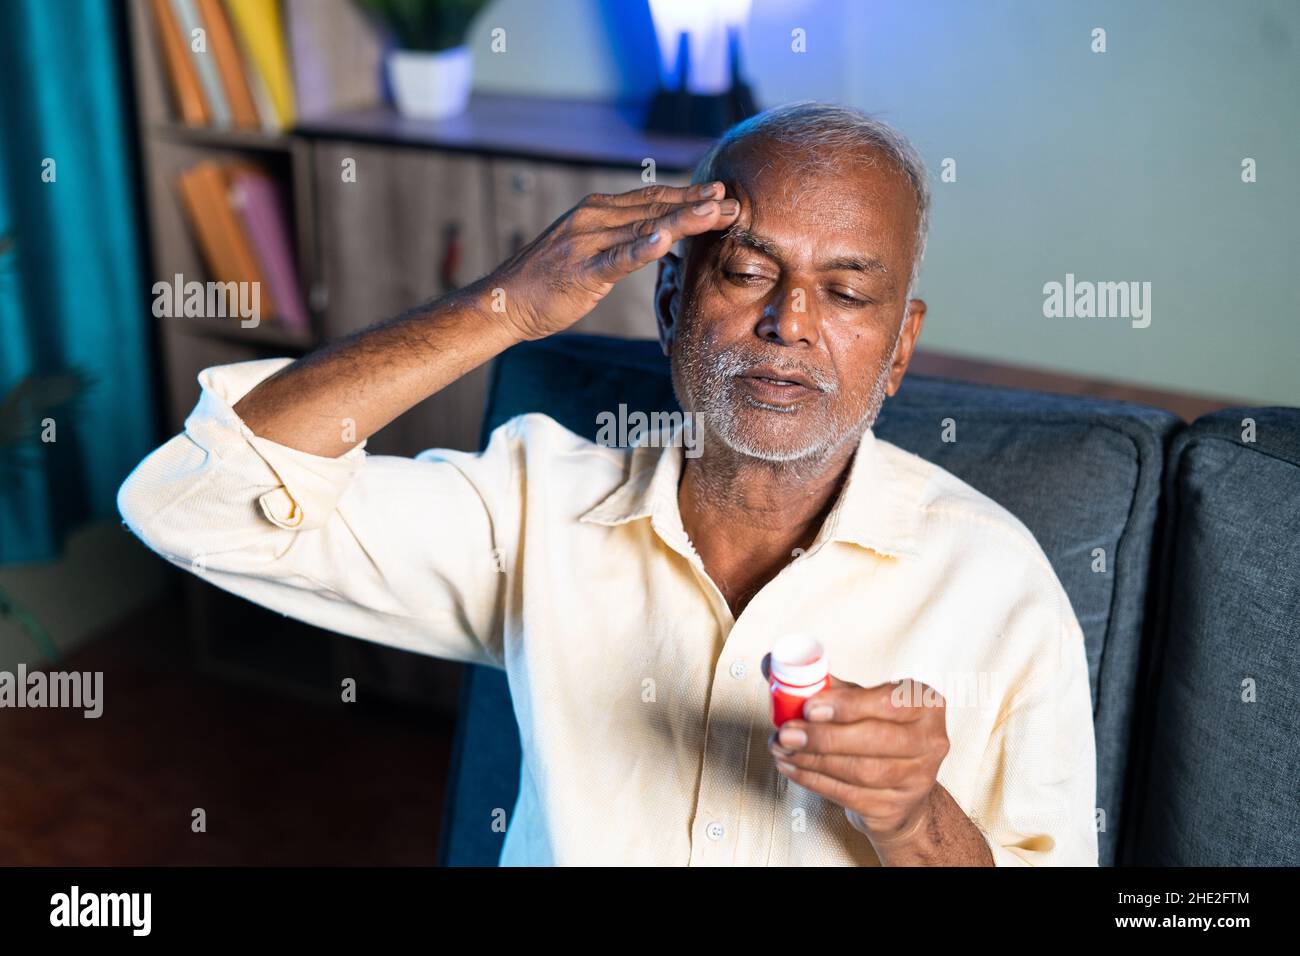 Hombre mayor que usa bálsamo para el alivio del dolor de cabeza - concepto de pomada de masaje para la migraña, alivio del estrés y analgésico. Foto de stock